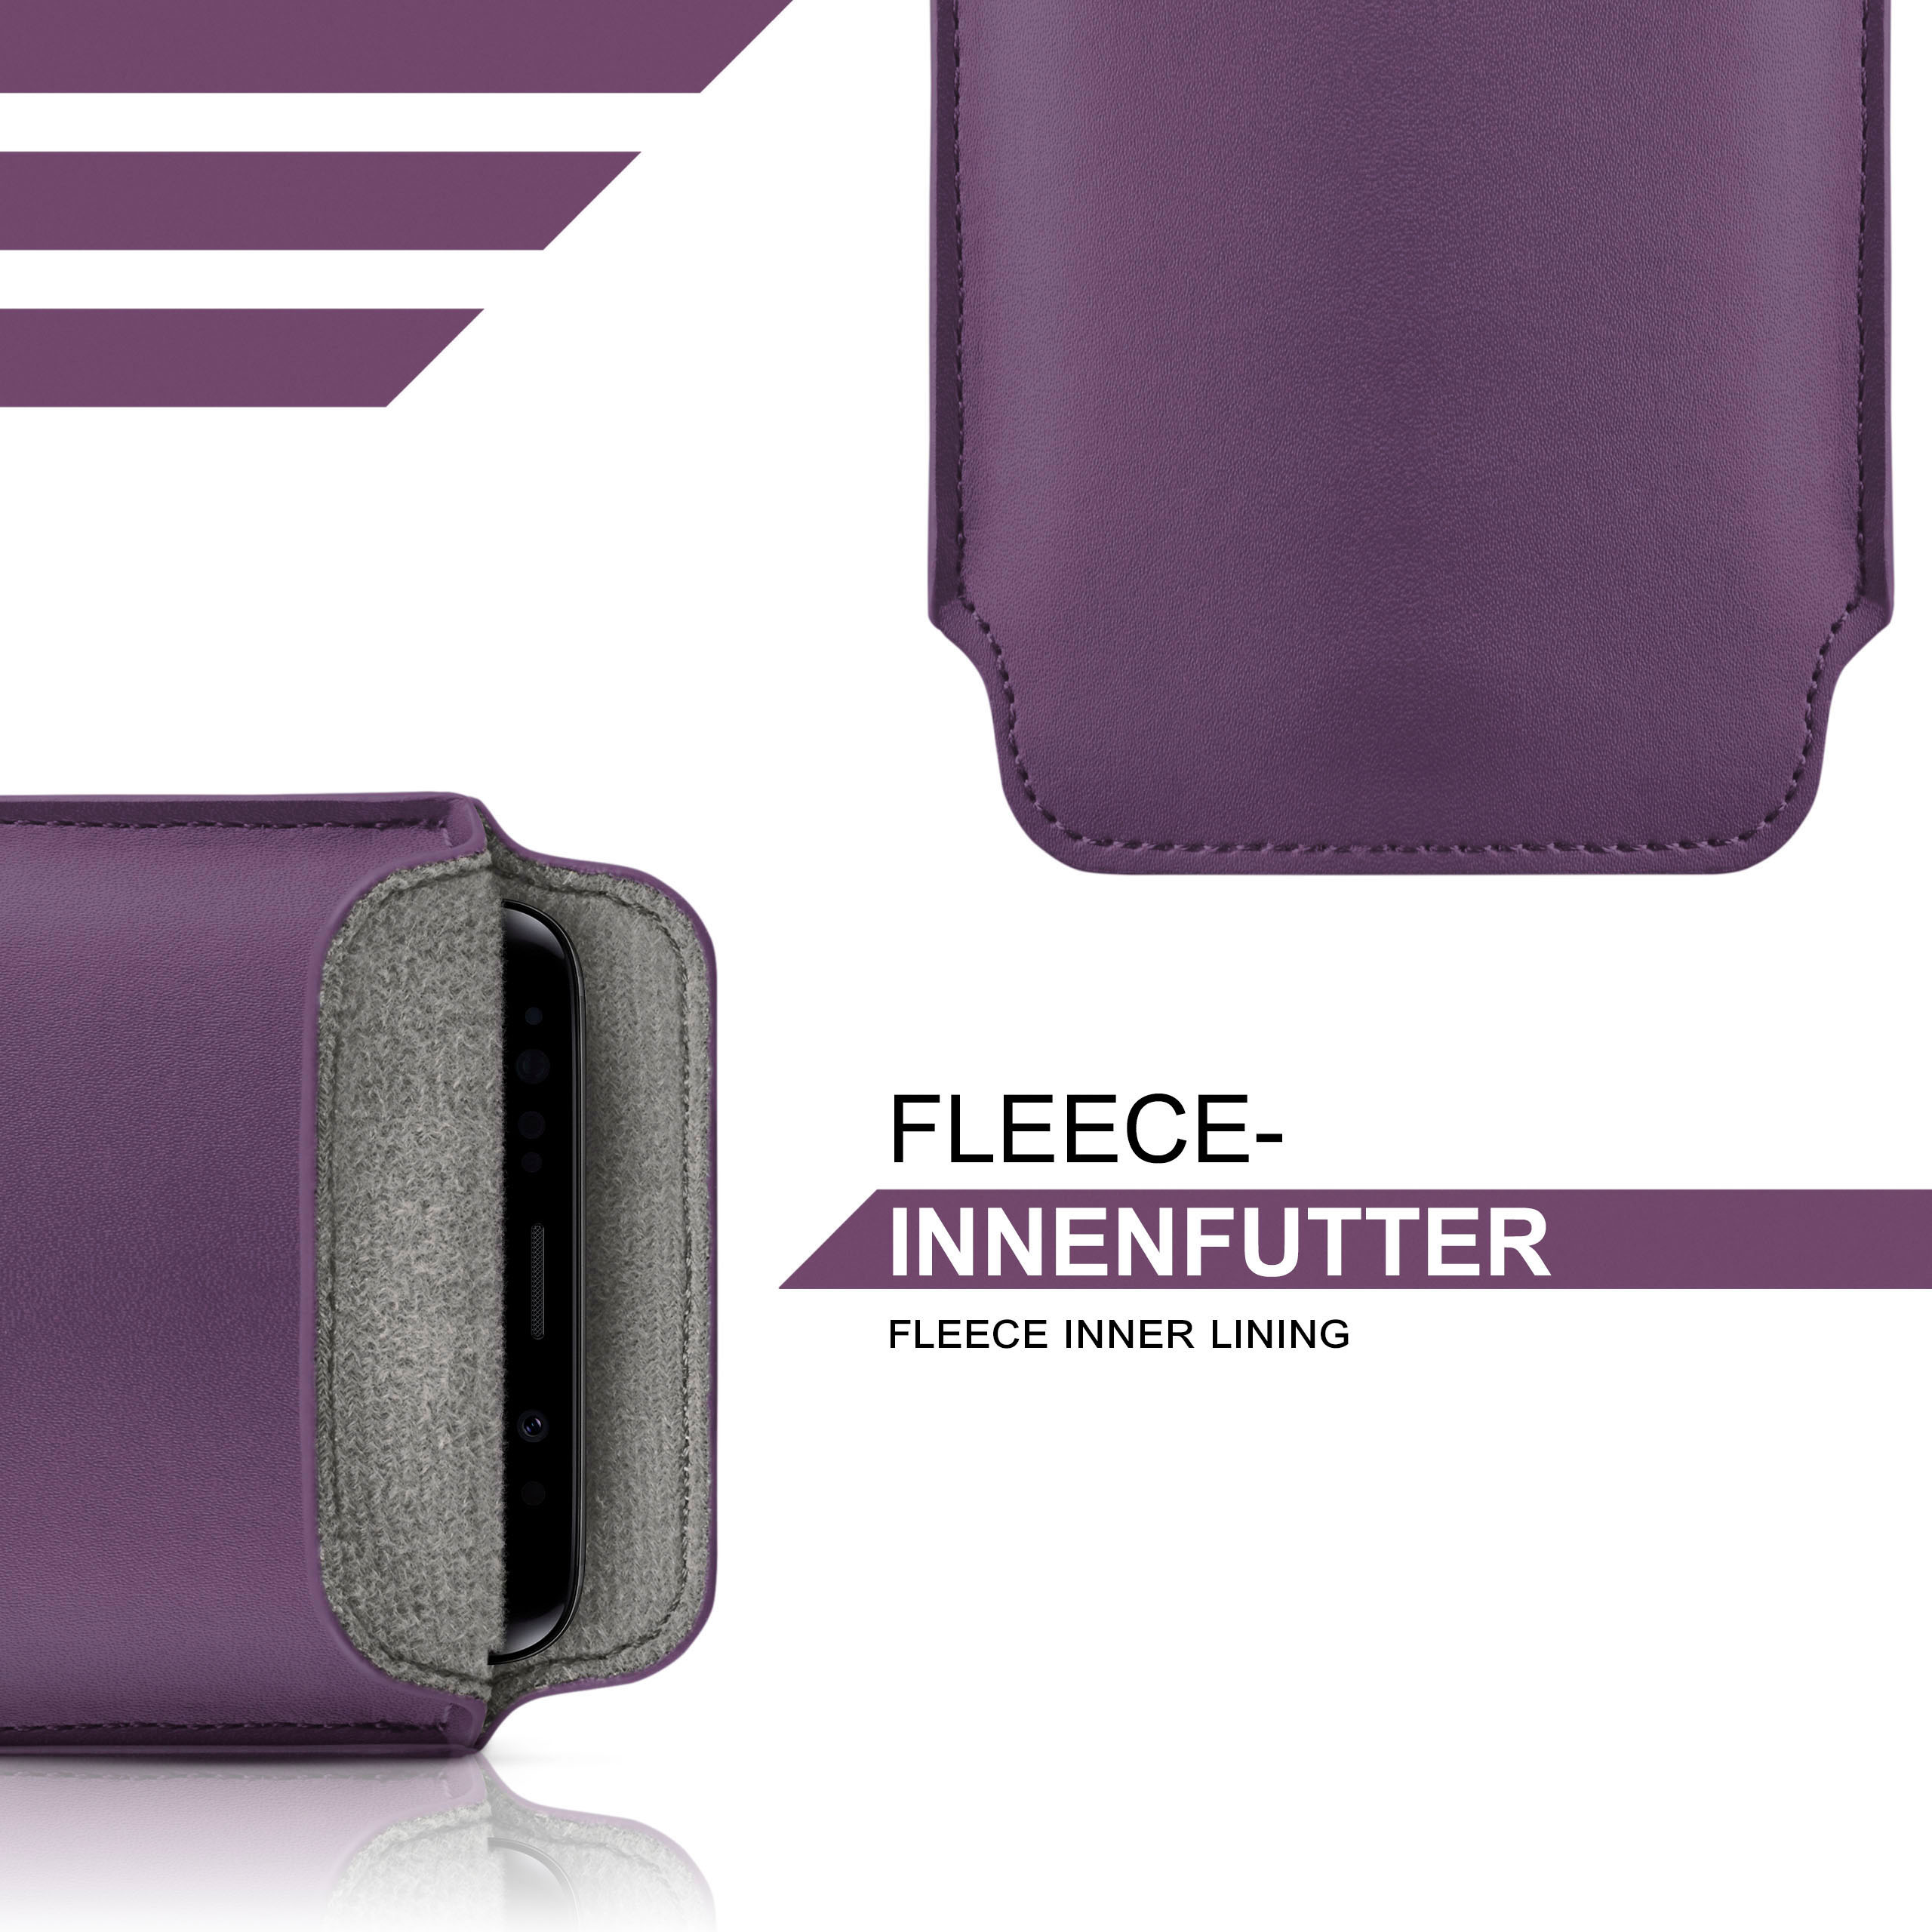 MOEX Slide Case, Full Cover, Indigo-Violet 8040, Doro